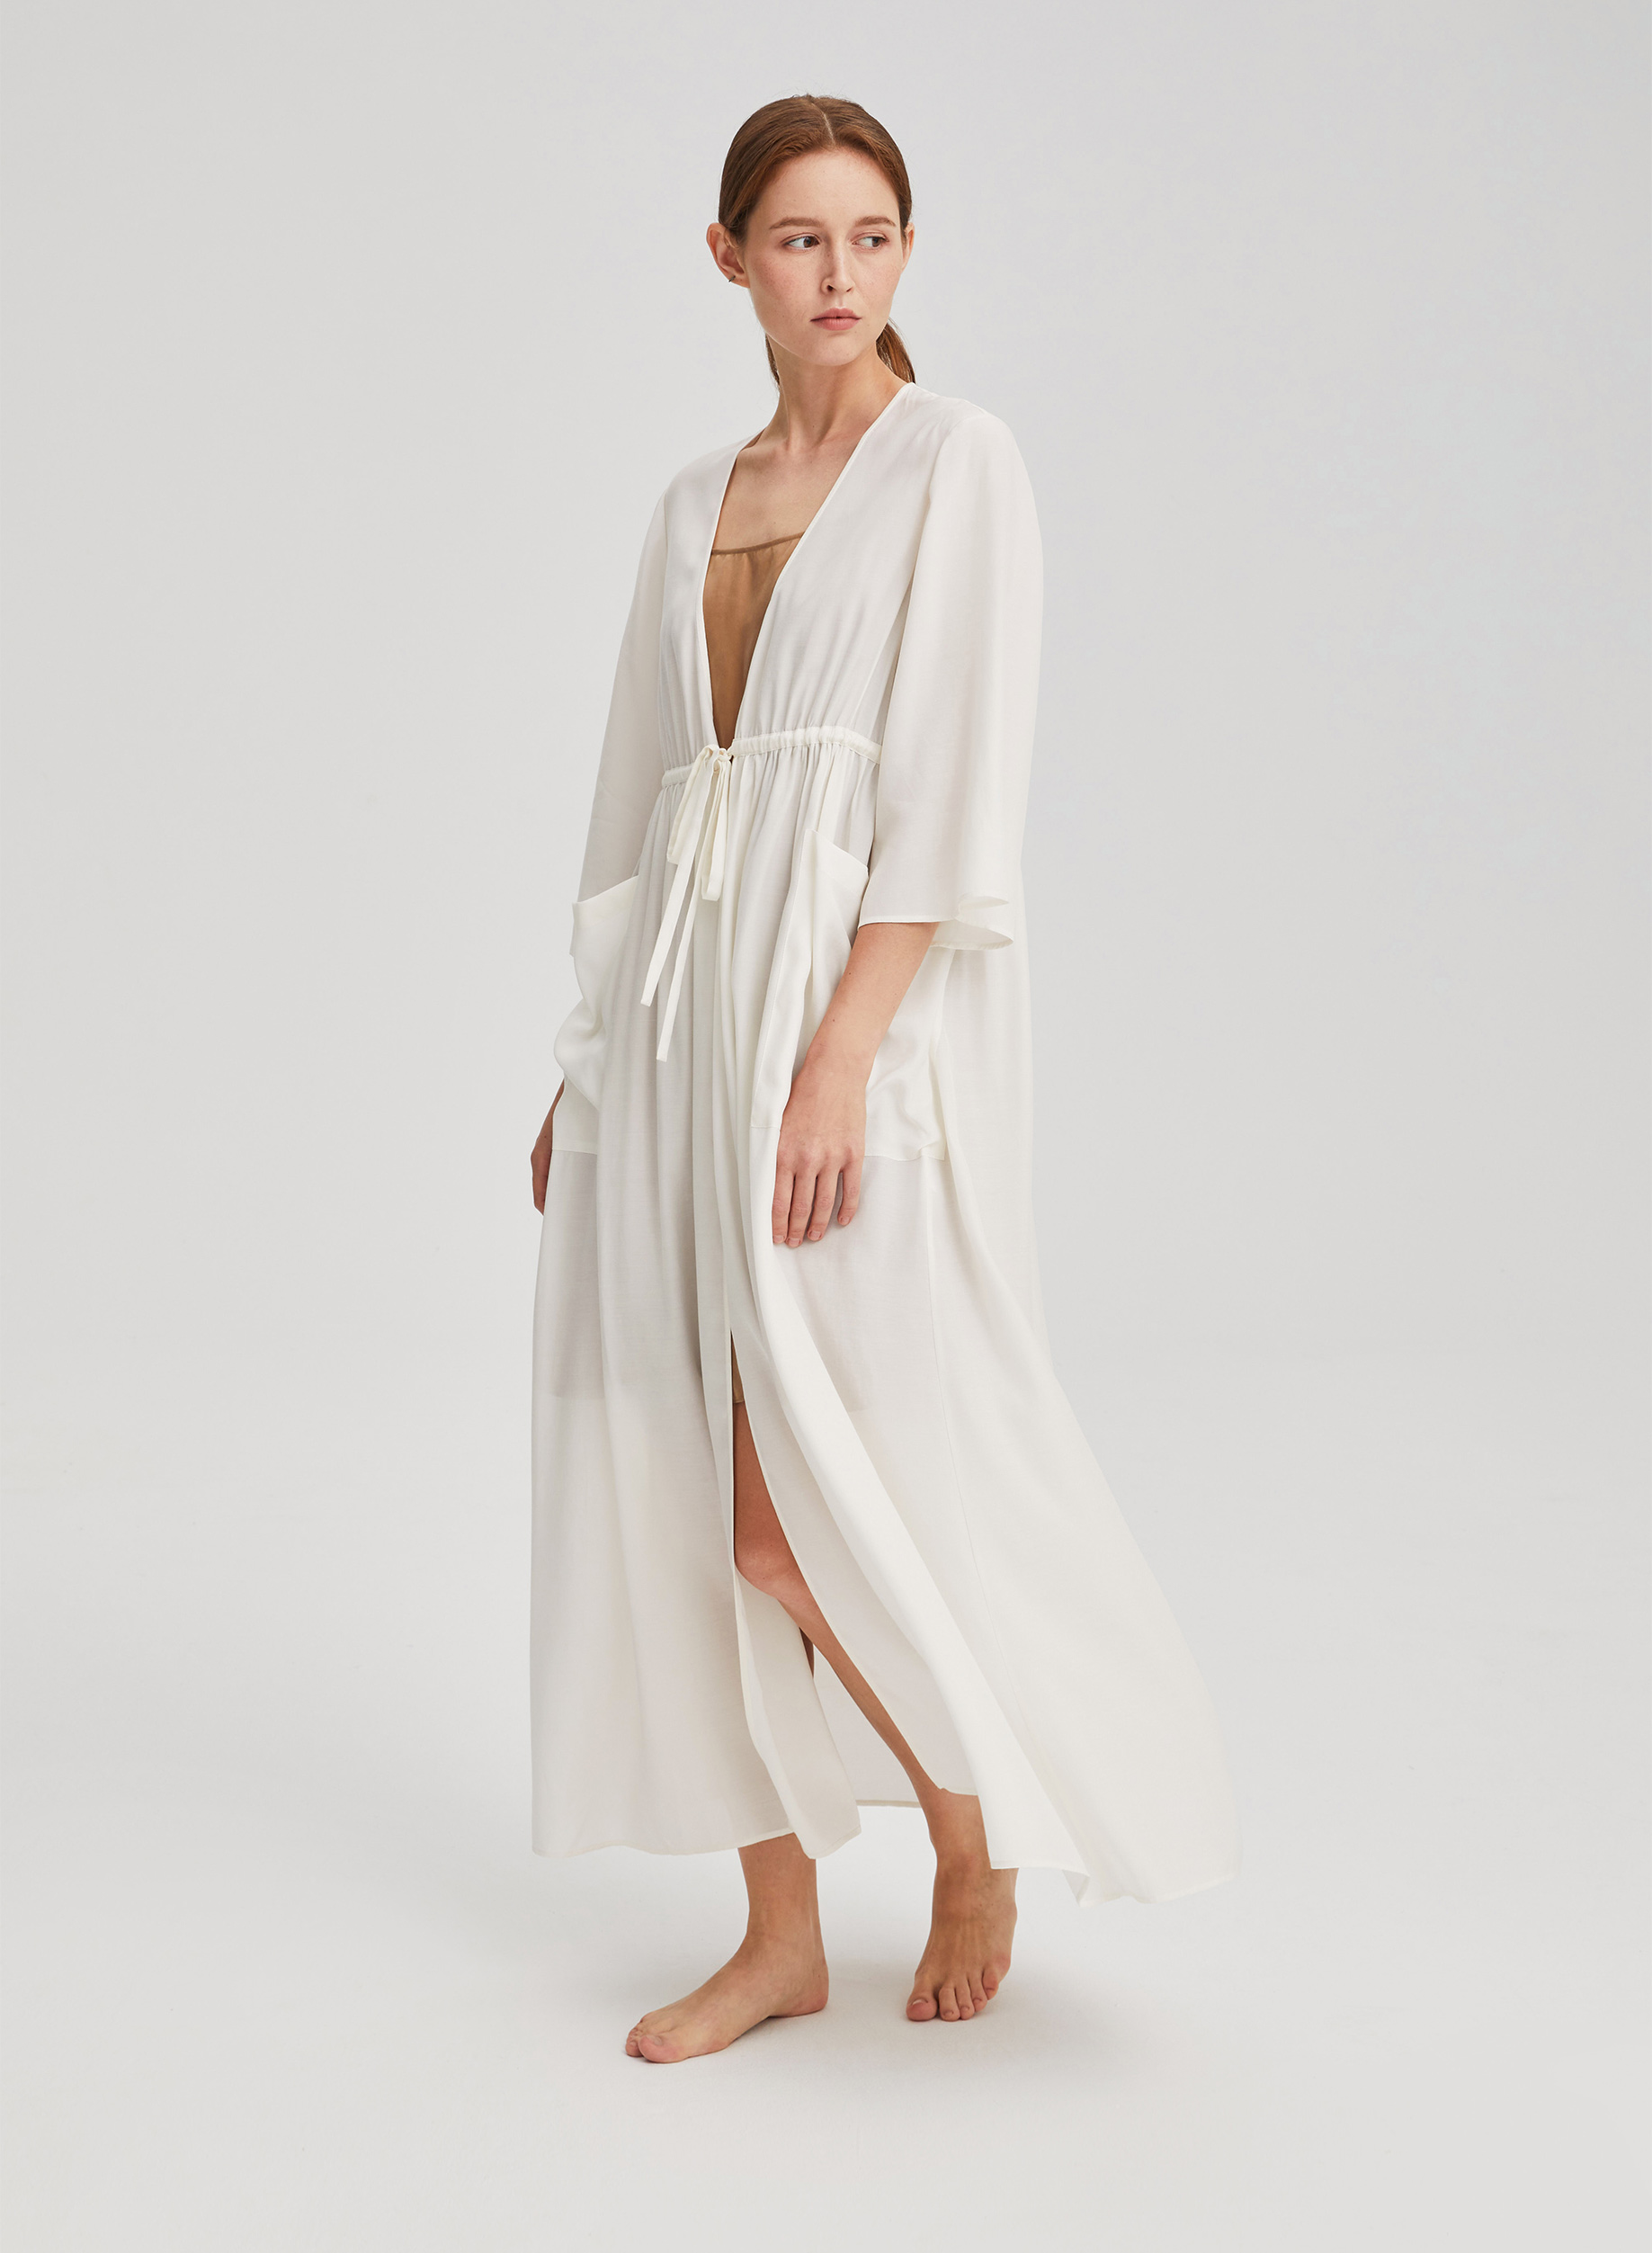 Classic | Kimono White Trends Drawstring Robe in lifestyle